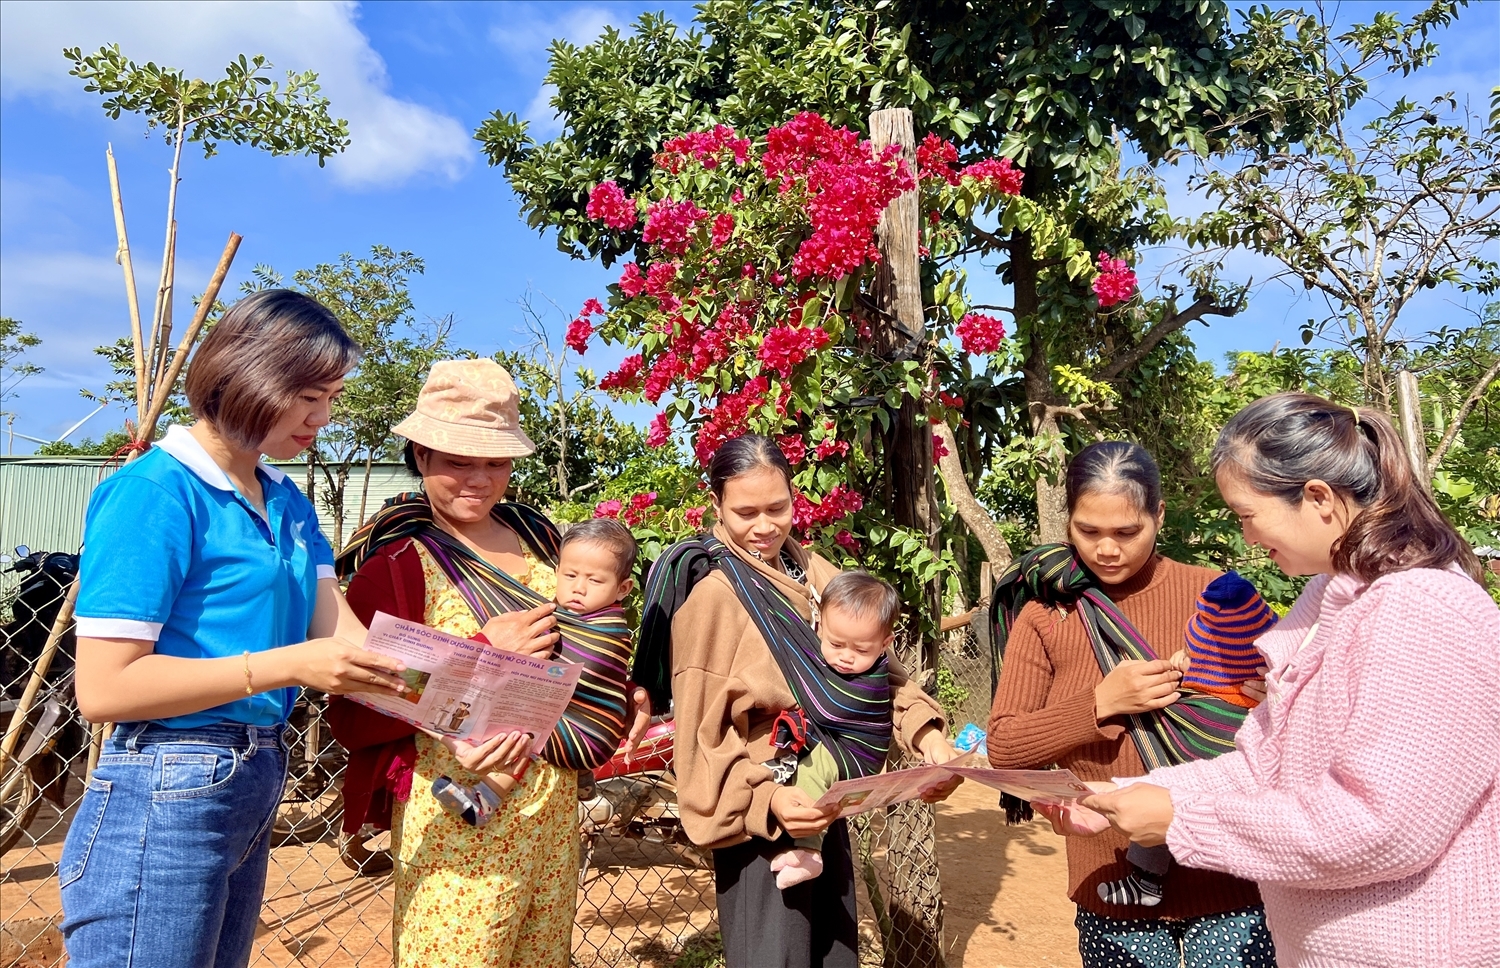 Huyện Chư Pưh (Gia Lai) tuyên truyền kiến thức chăm sóc sức khỏe sinh sản, làm mẹ an toàn, chăm sóc trẻ thơ cho người dân